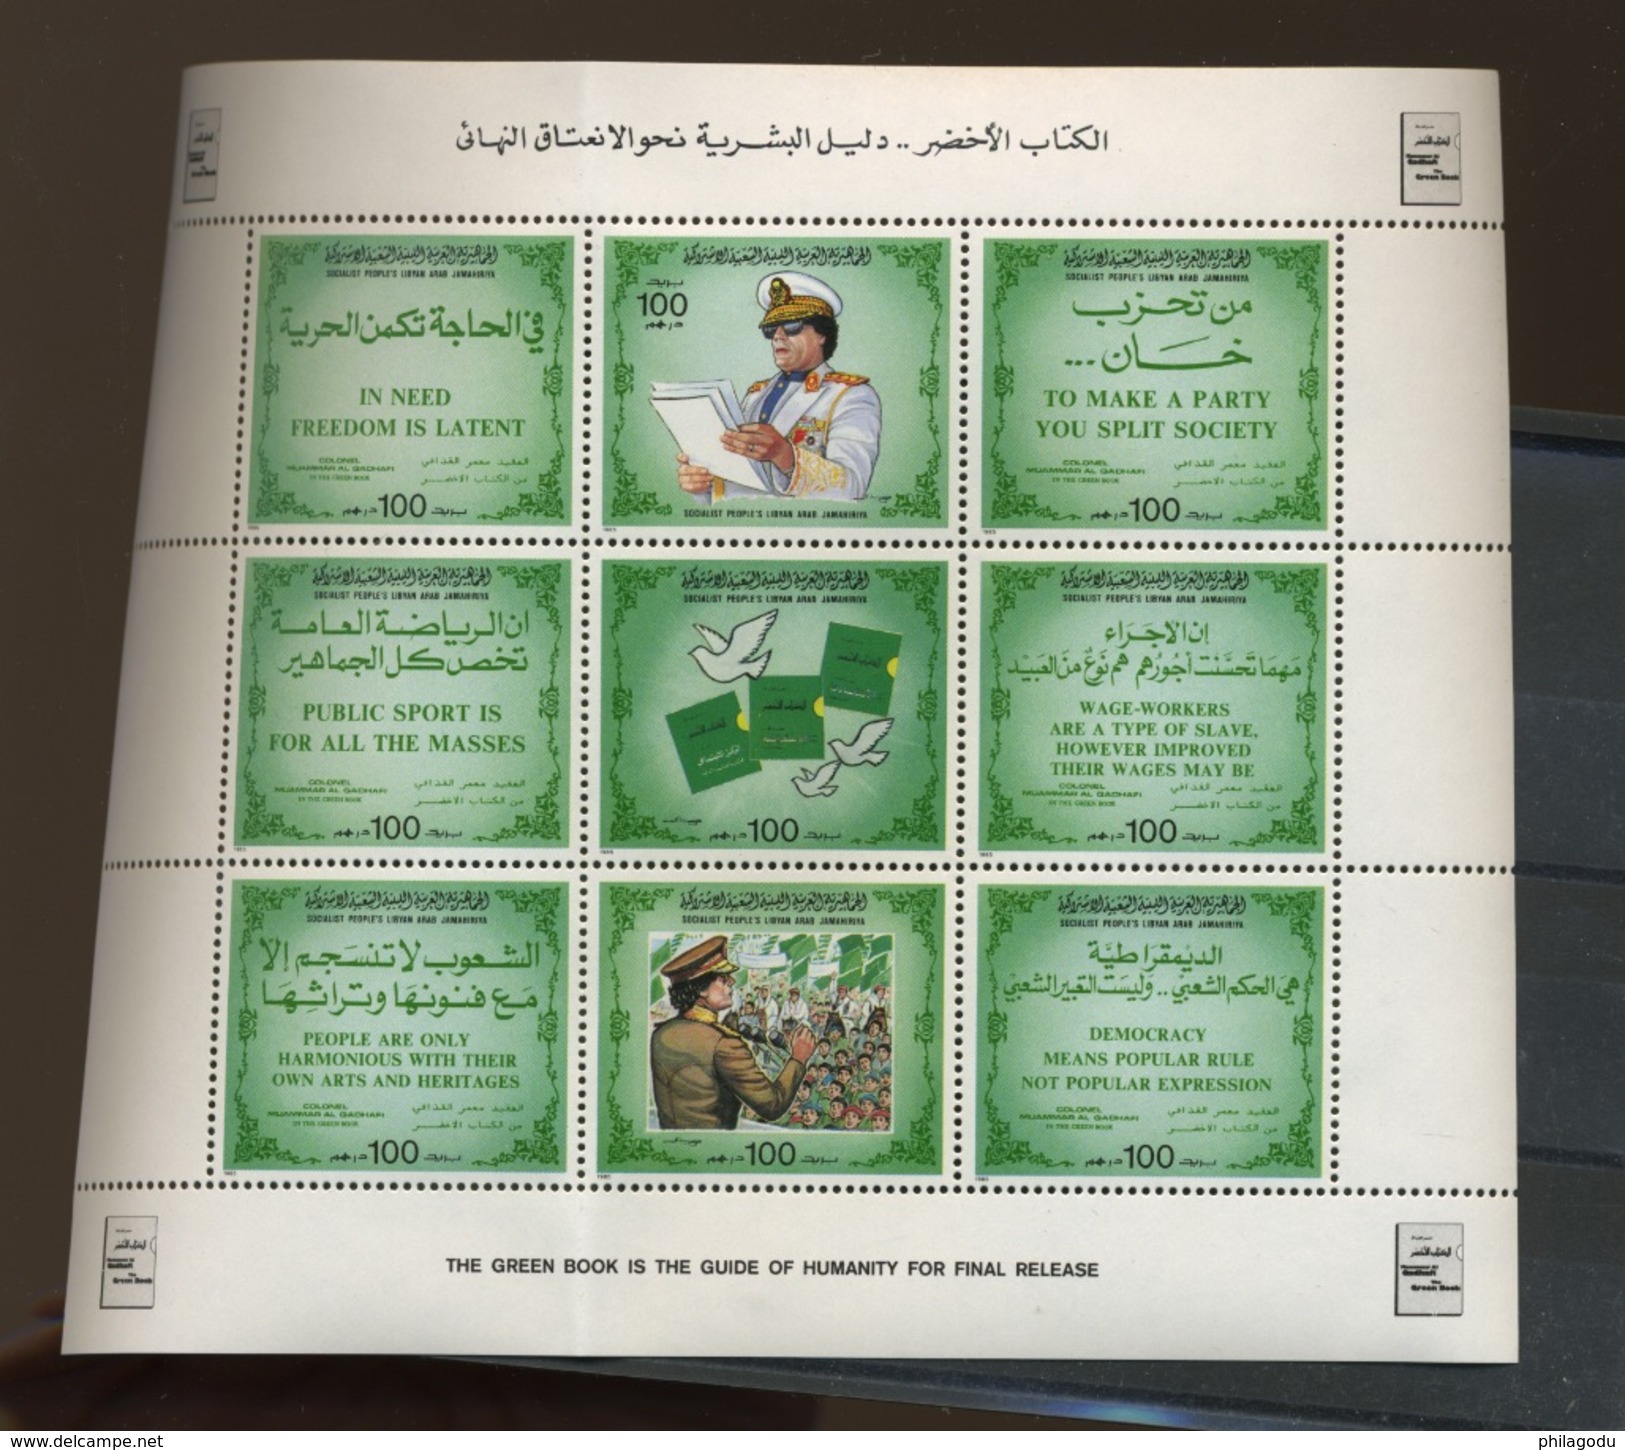 1985 LIBYA  Livre Vert Des Bons Principes De Kadafi  1578-1586  Neuf **  La Petite Feuille A été Pliée  Was Folded - Libia